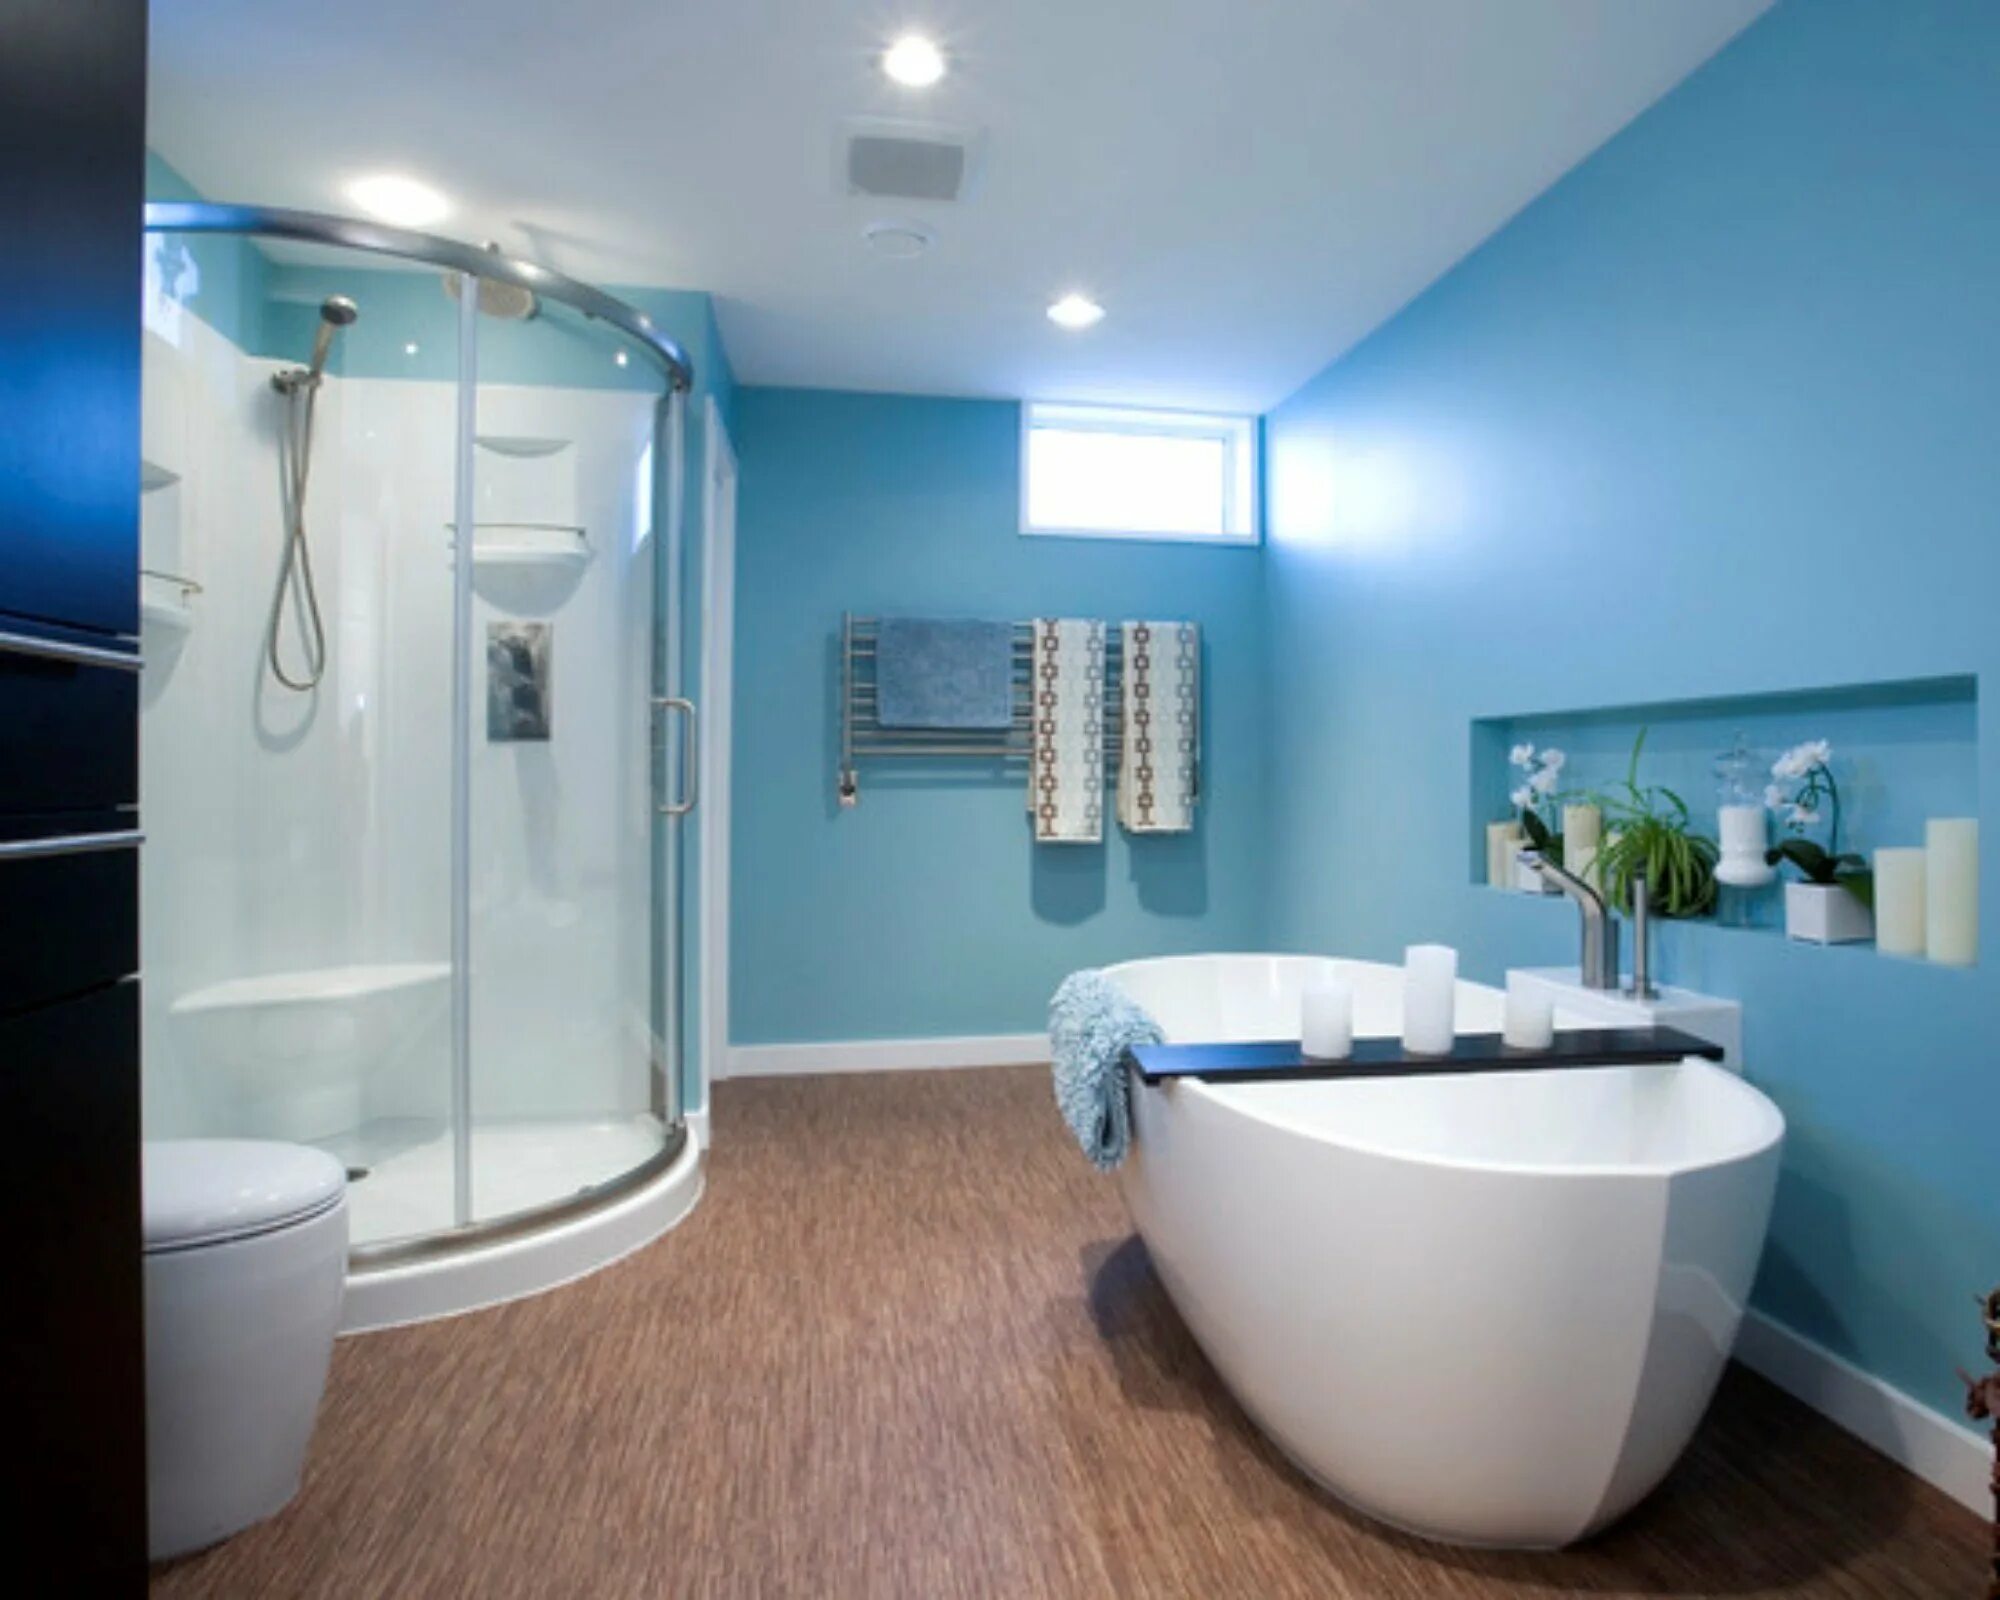 Ванная комната вода. Покрашенная ванная комната. Краска для ванной комнаты. Краска для ванной комнаты для стен. Крашенные стены в ванной.